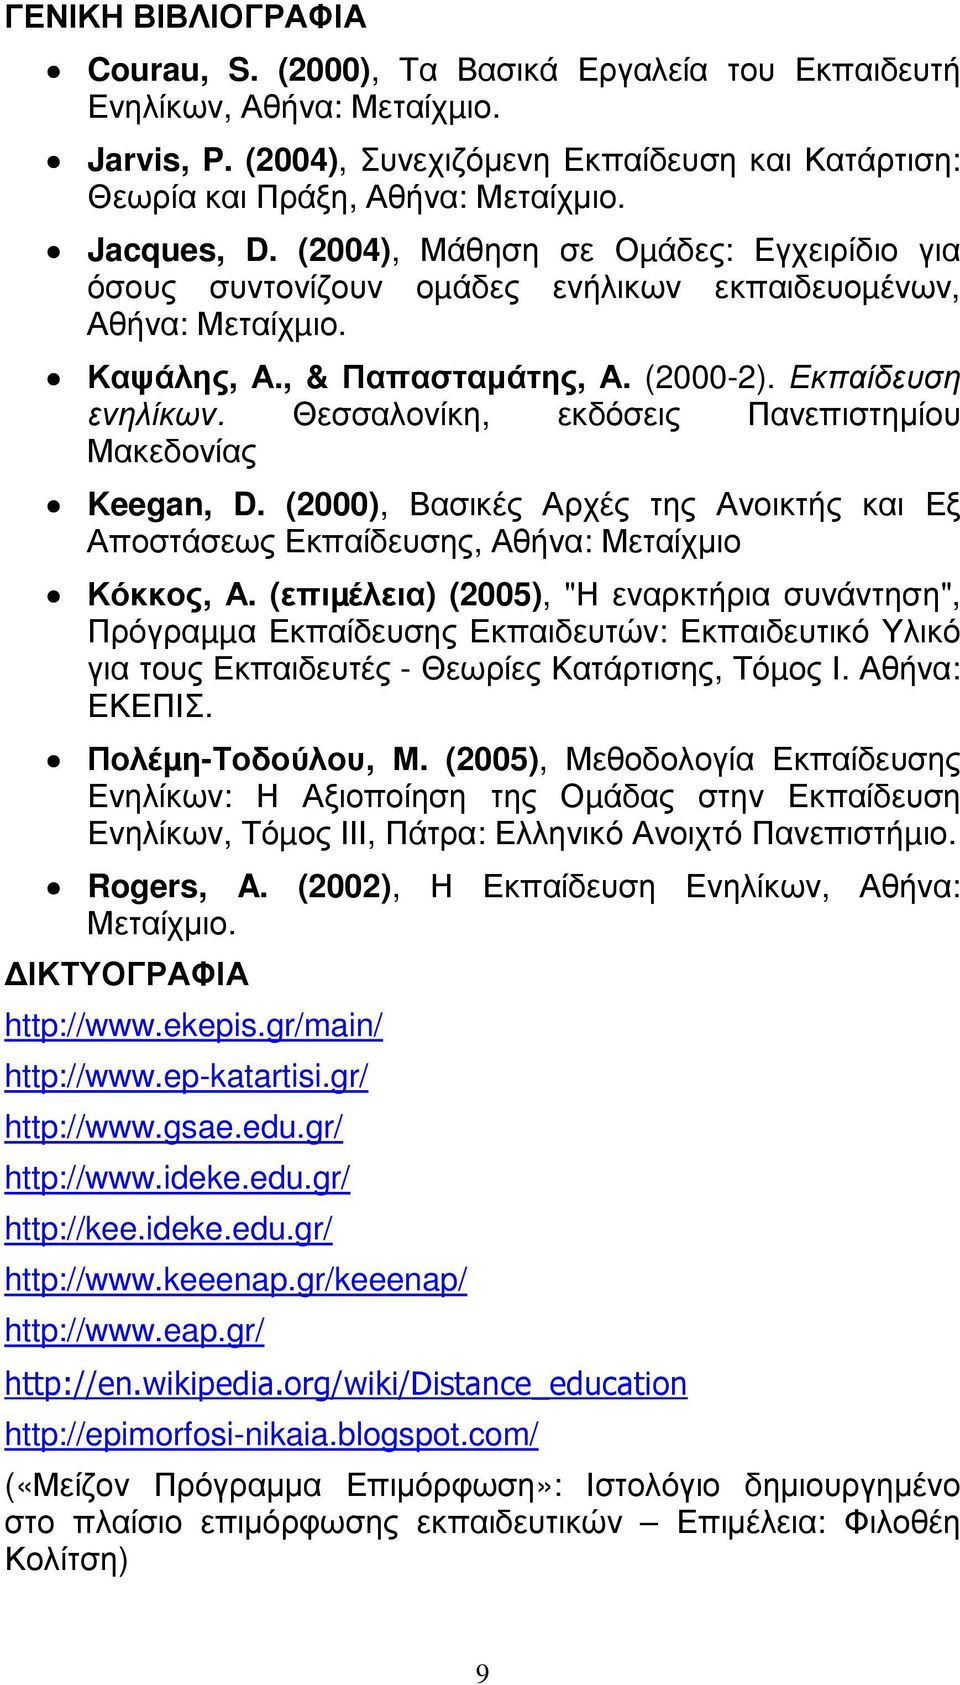 Θεσσαλονίκη, εκδόσεις Πανεπιστηµίου Μακεδονίας Keegan, D. (2000), Βασικές Αρχές της Ανοικτής και Εξ Αποστάσεως Εκπαίδευσης, Αθήνα: Μεταίχµιο Κόκκος, Α.